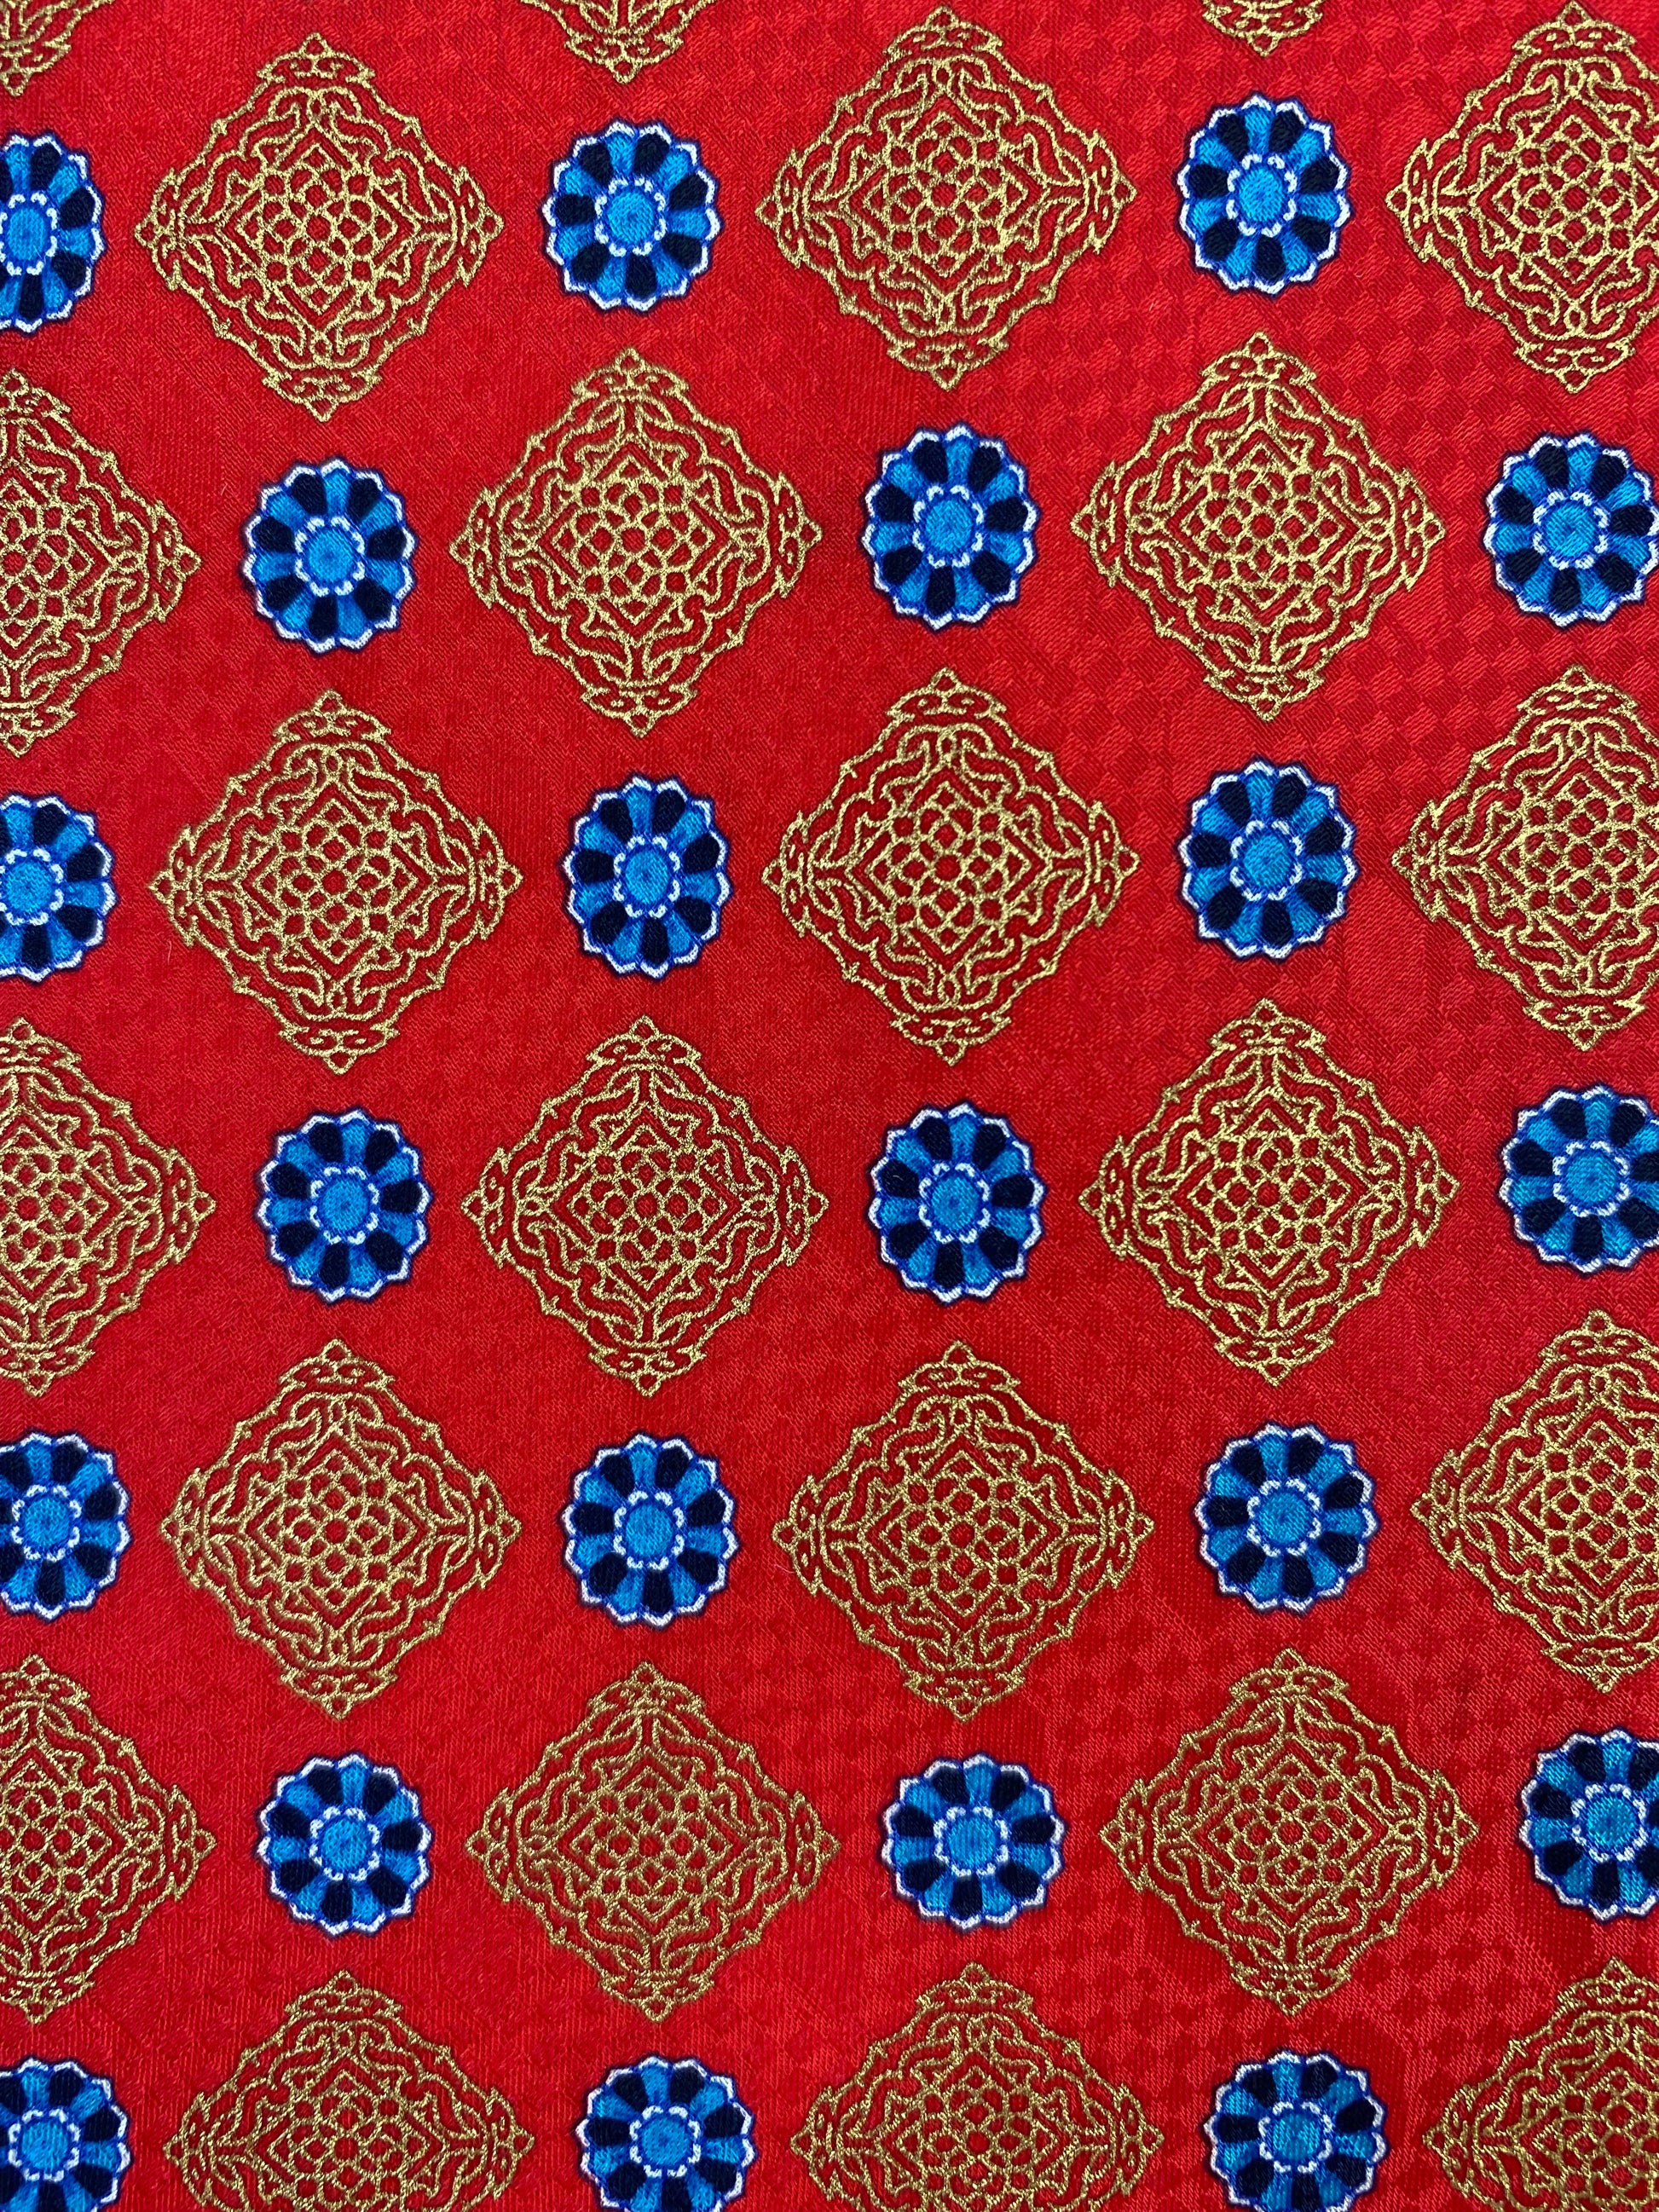 Close-up of: 90s Deadstock Silk Necktie, Men's Vintage Red/Blue Medallion Pattern Tie, NOS